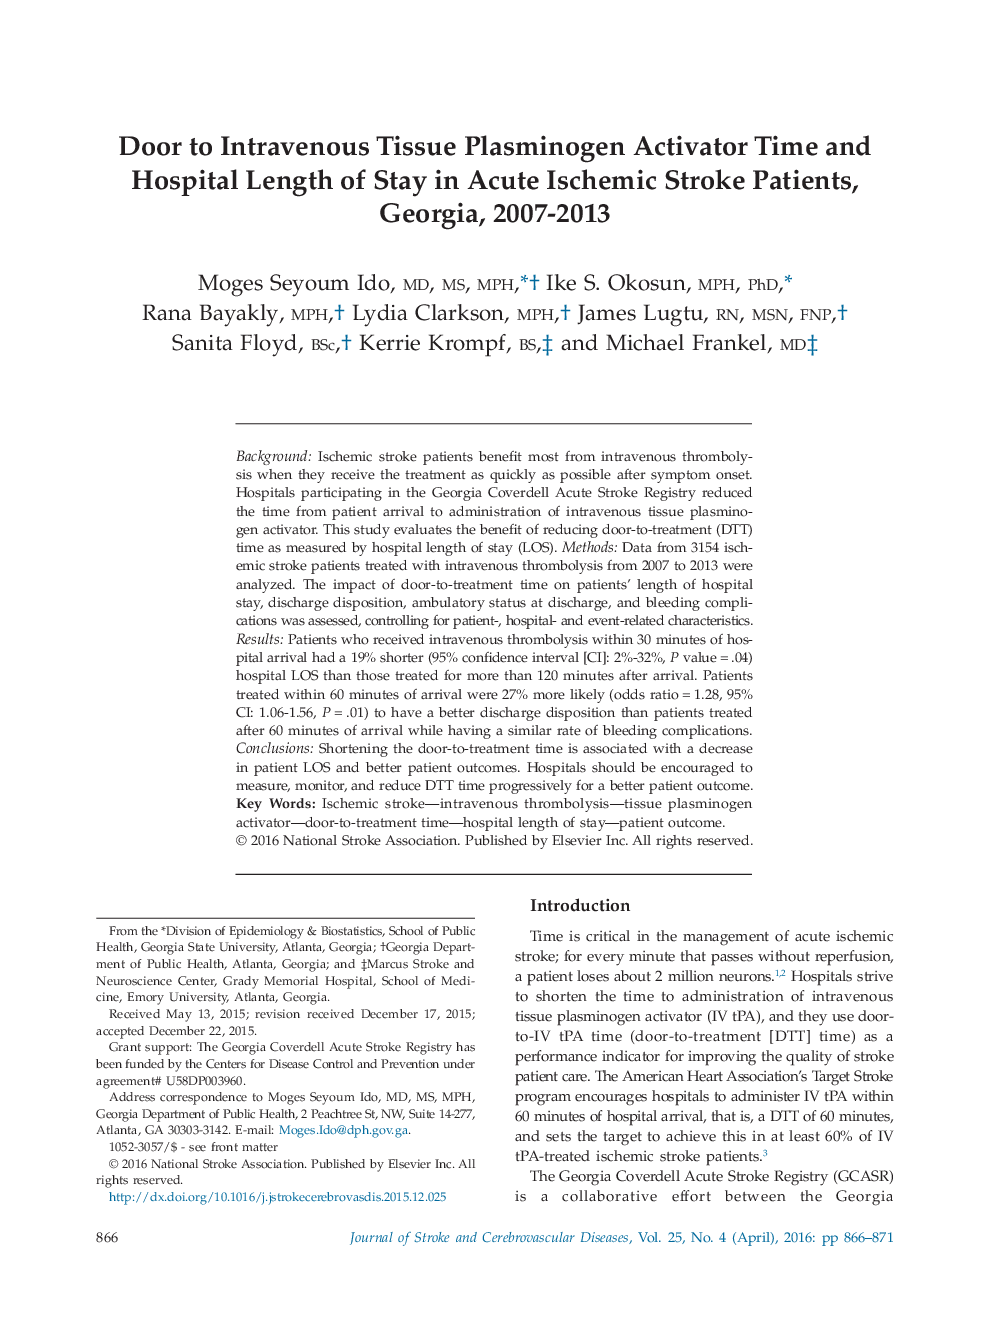 دری برای زمان فعال کننده پلاسمینوژن بافت داخل وریدی و مدت زمان بستری در بیماران سکته مغزی ایسکمیک حاد، گرجستان، 2007-2013